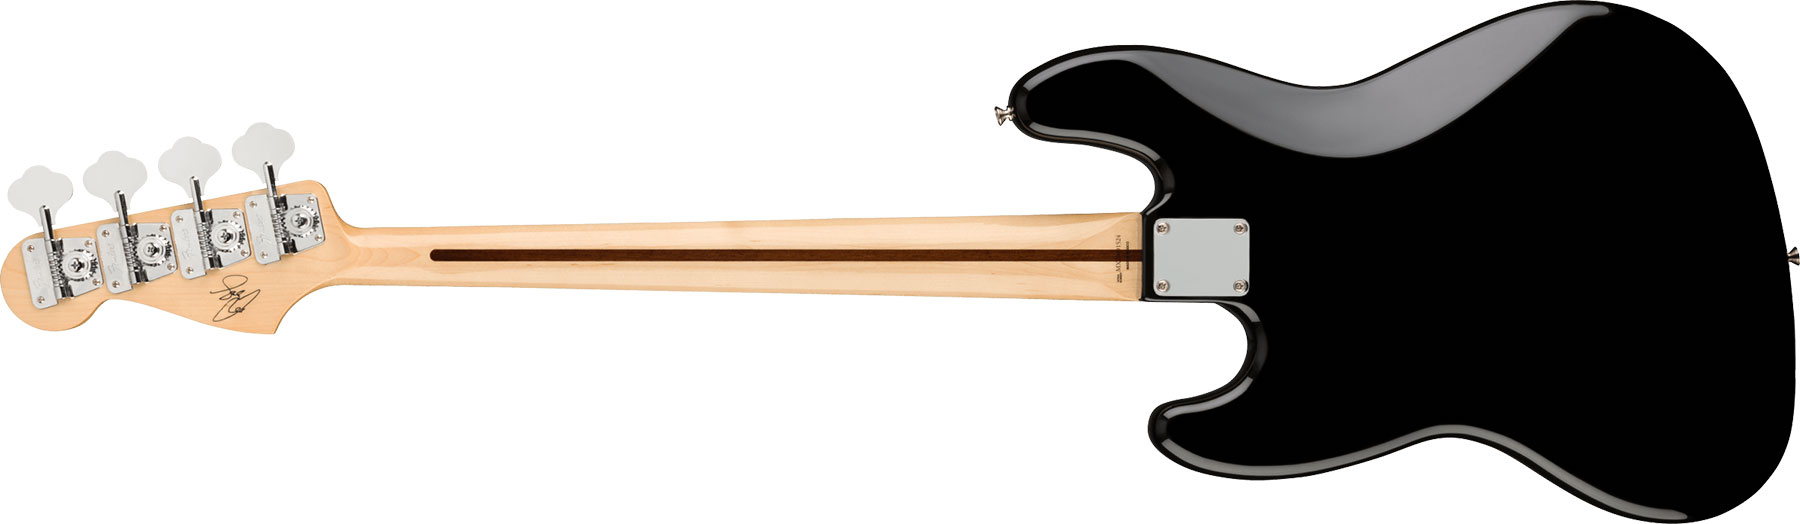 Fender Geddy Lee Jazz Bass Signature Mex Mn - Black - Solid body elektrische bas - Variation 1